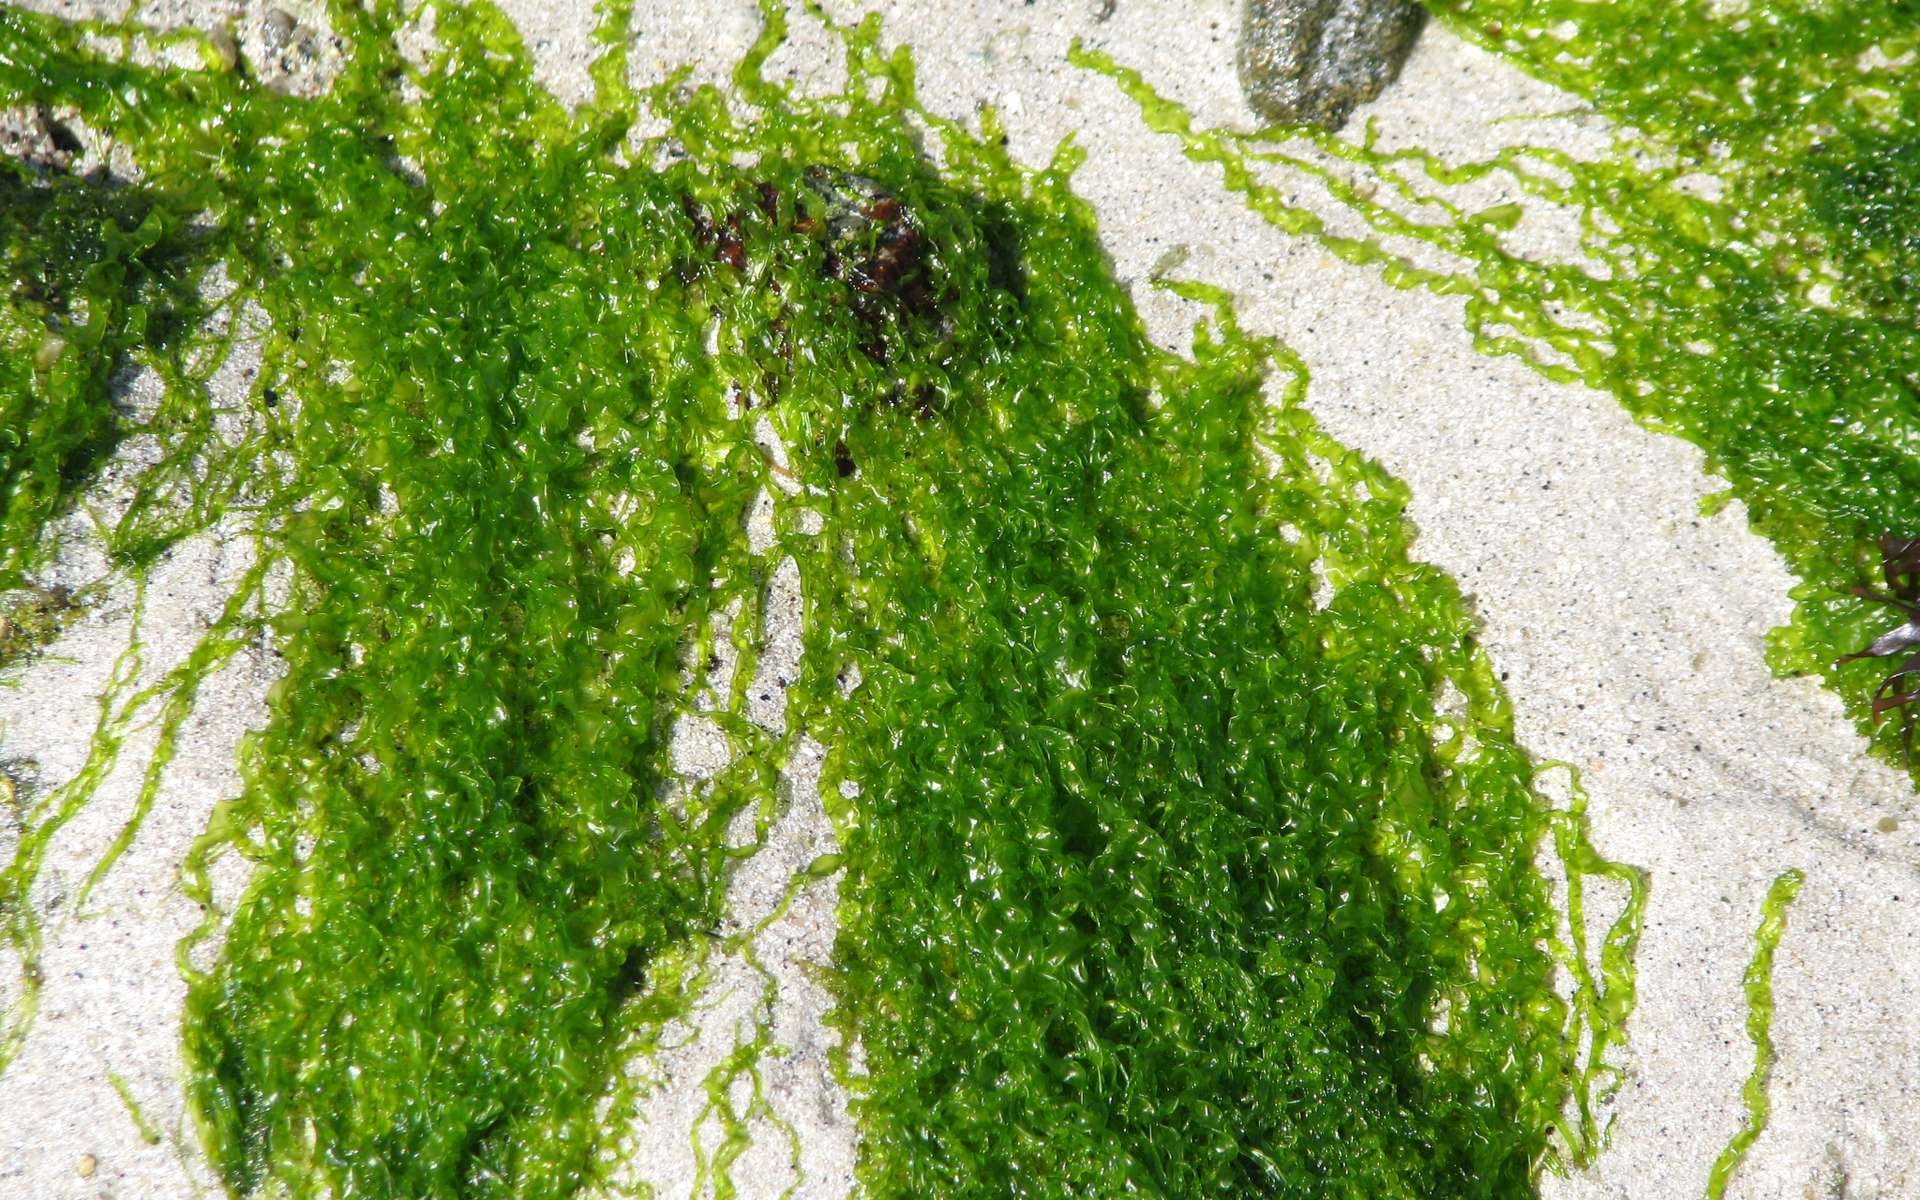 Les algues, en tant que matière première pour biocarburant, sont vues comme le nouvel or vert. © JaHoVil, cc by nc sa 2.0